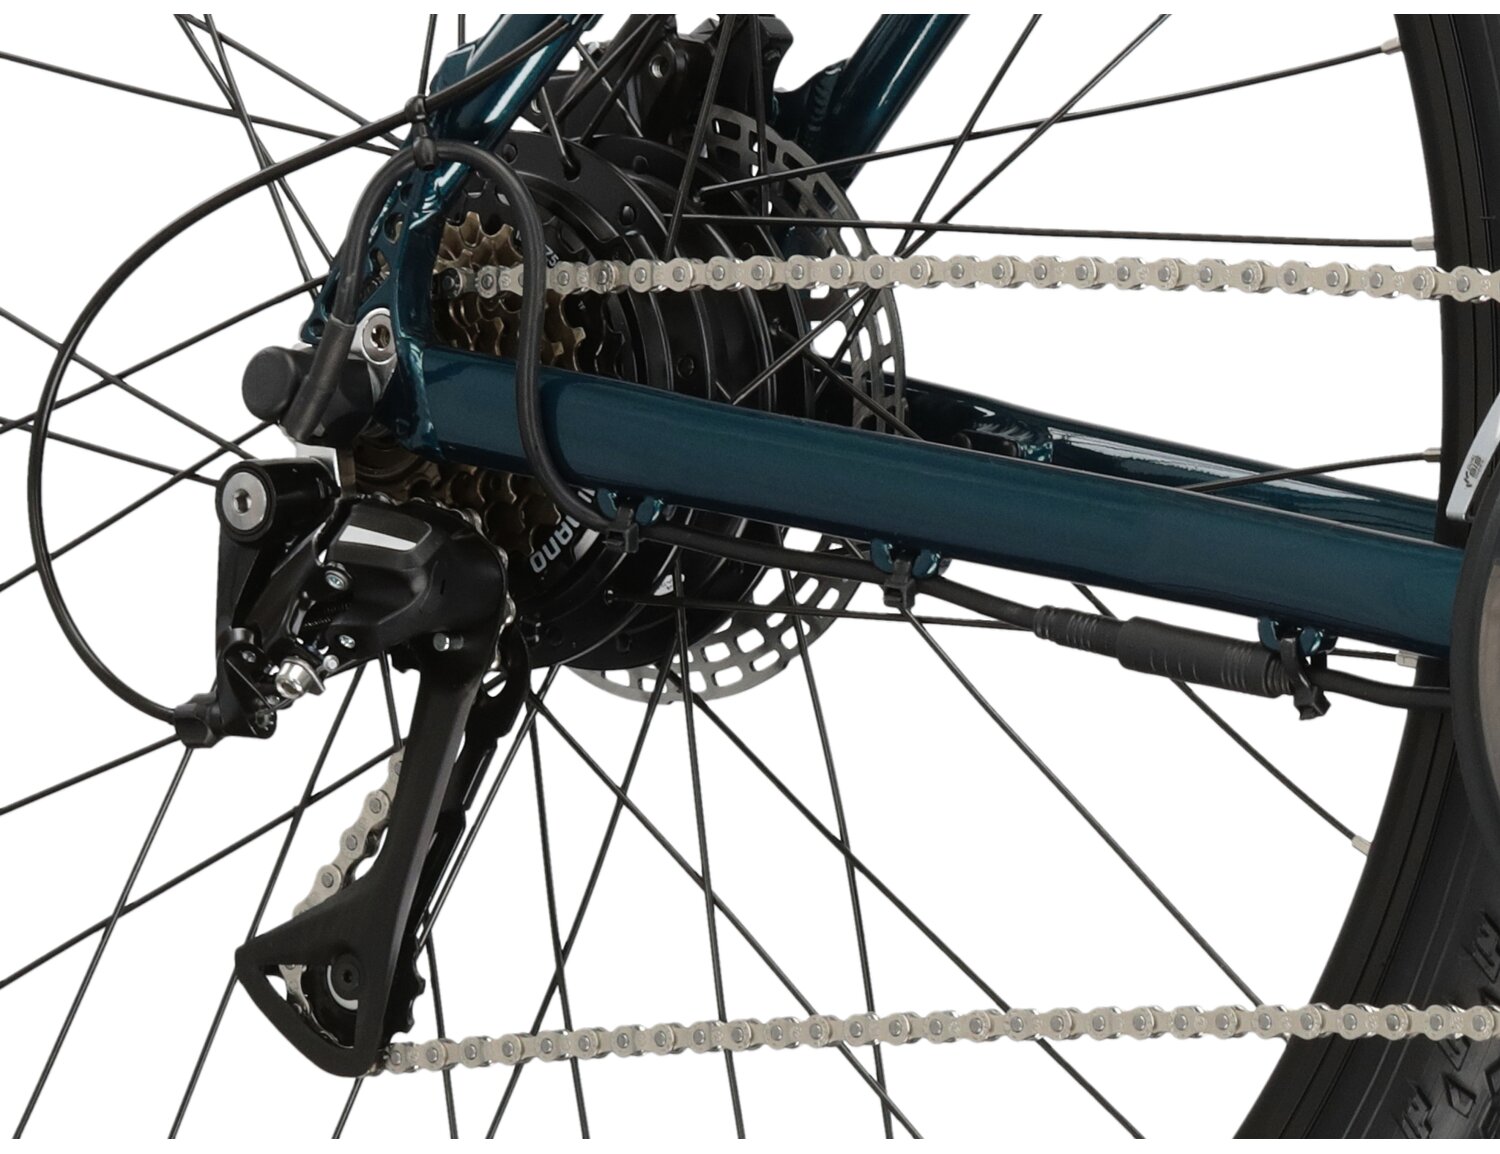  Tylna siedmiobiegowa przerzutka Shimano Acera RD M3020 oraz hydrauliczne hamulce tarczowe Power M960 w elektrycznym rowerze górskim Ebike MTB KROSS Hexagon Boost 345 Wh 